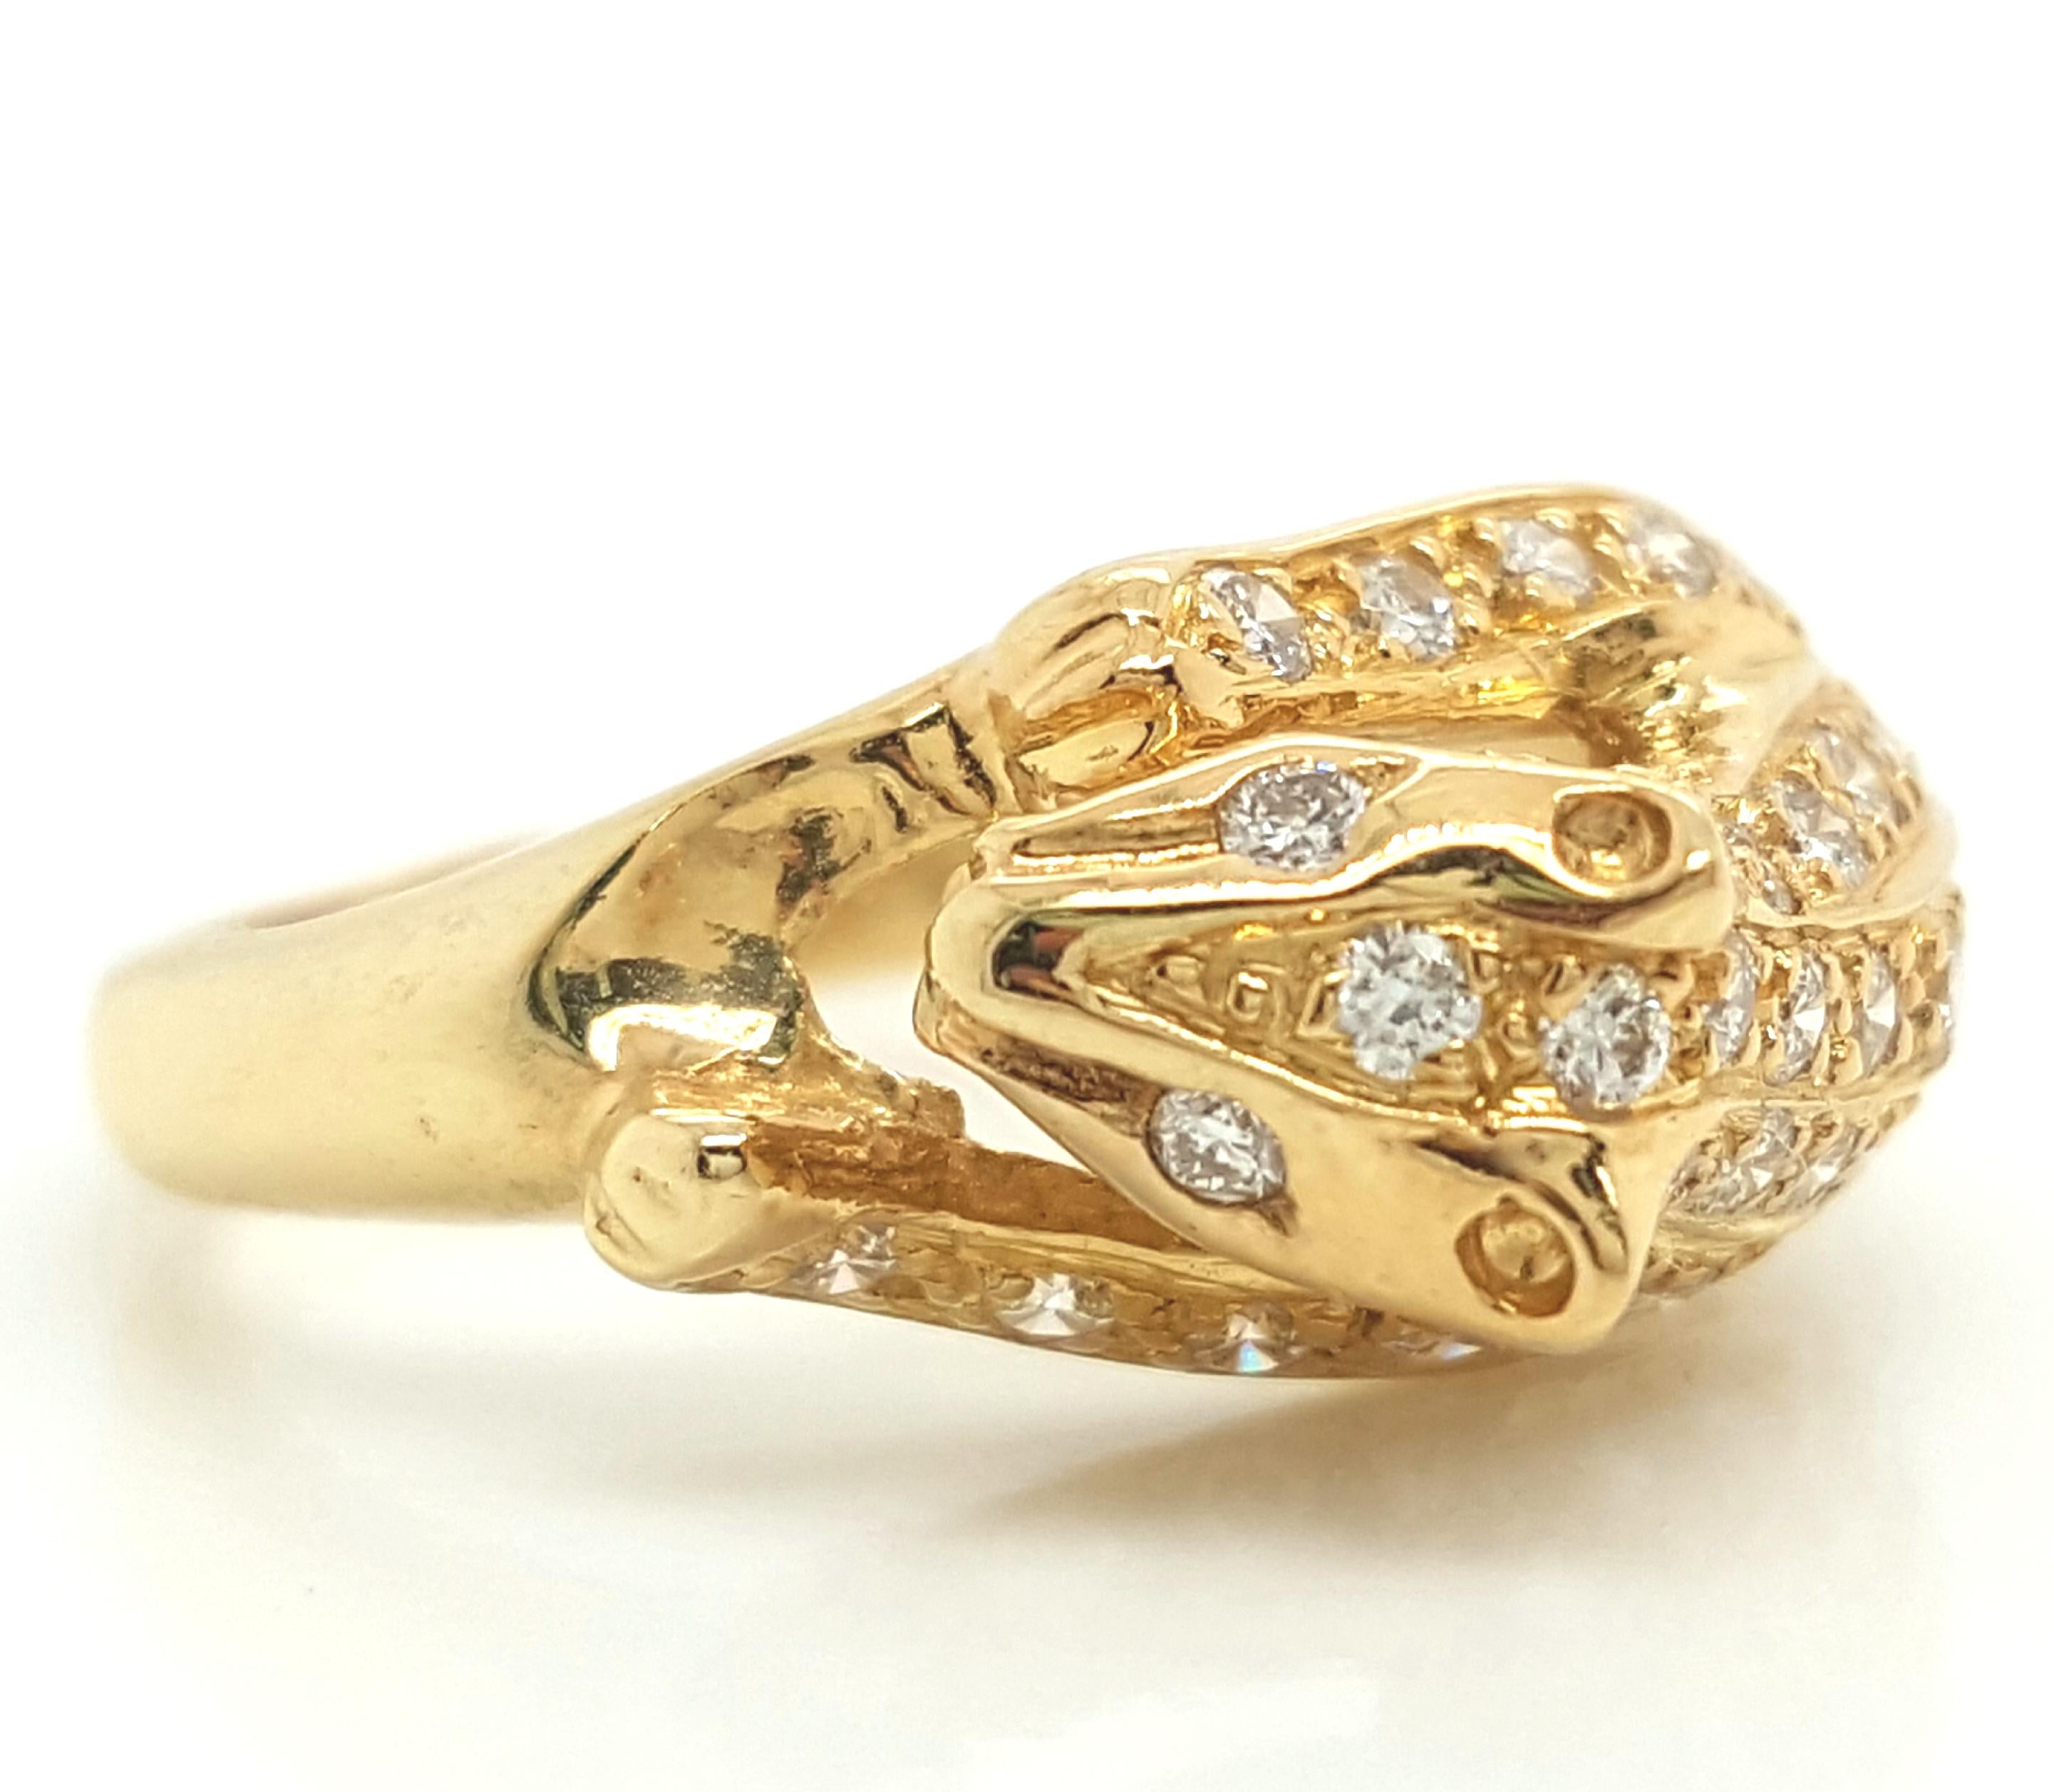 18K Gelbgold und Diamant Panther Ring.   Der als Panther gestaltete Ring ist unglaublich detailliert und verfügt über gepflasterte Diamanten im Vollschliff mit einem Gesamtgewicht von ca. 0,39 Karat in der Reinheit VS und der Farbe G - H.  Der Ring